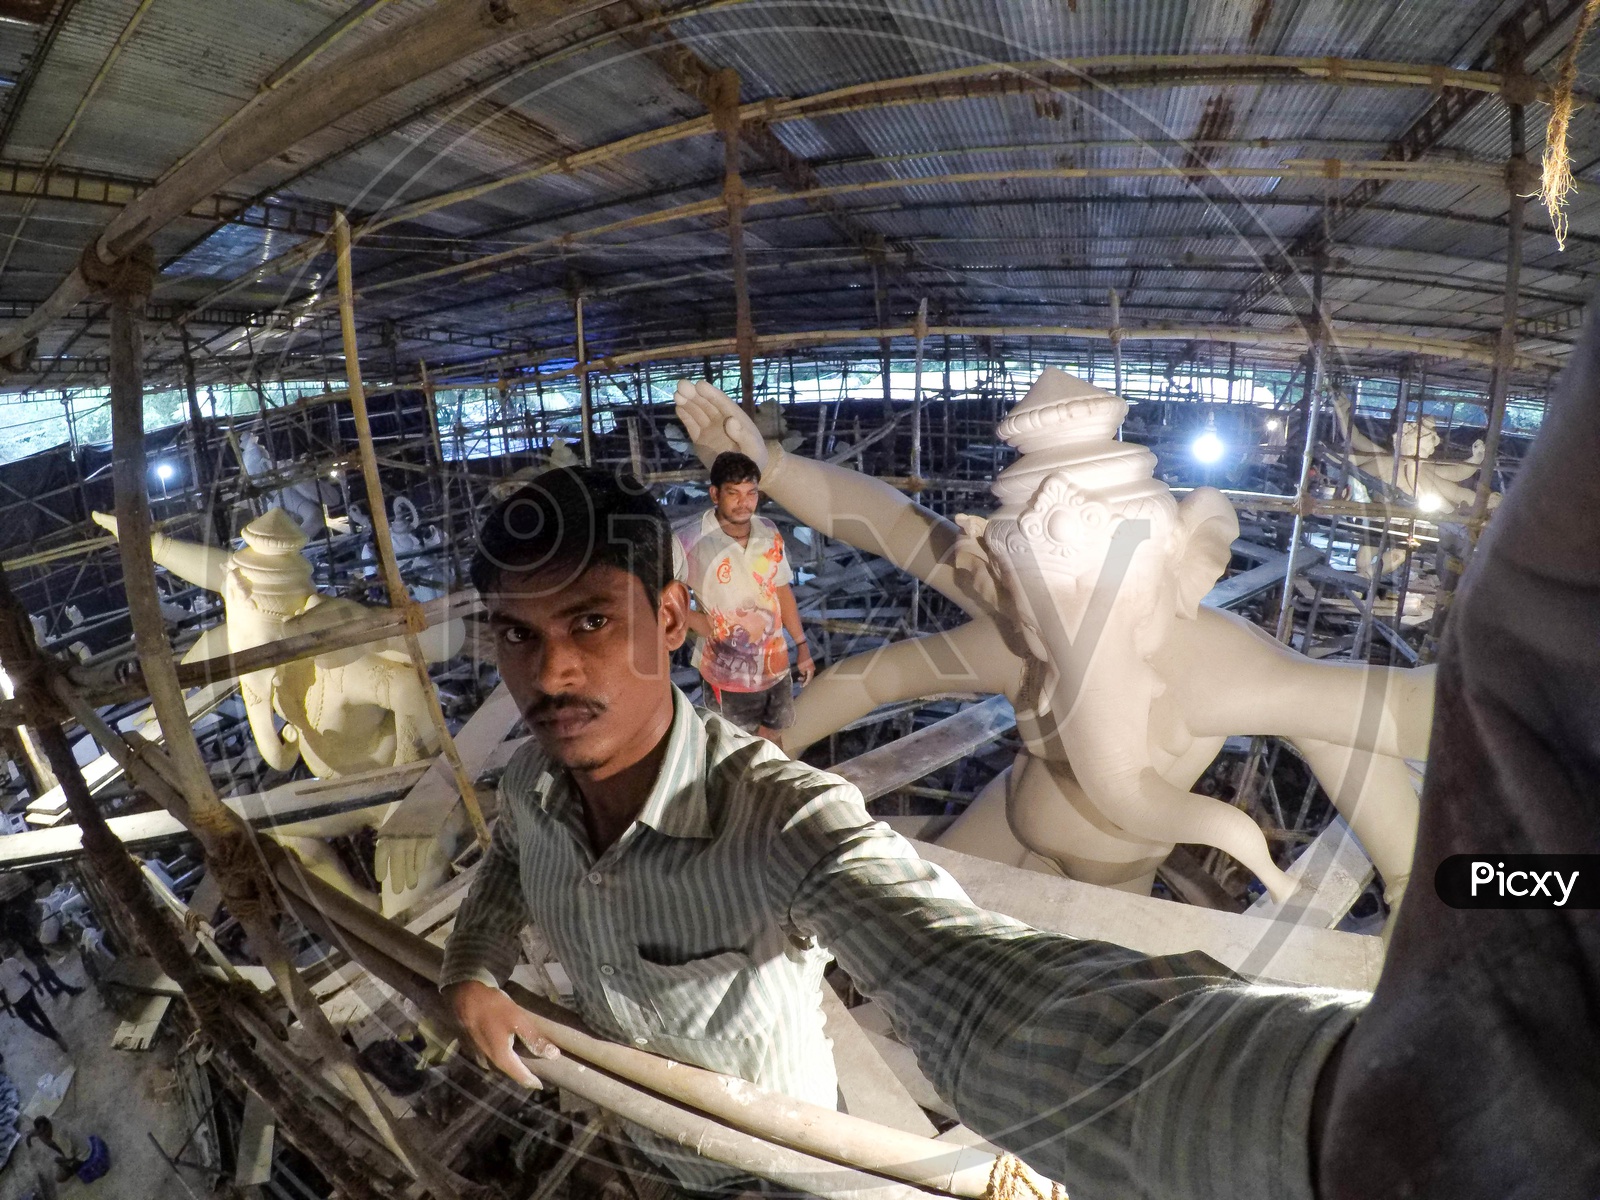 A selfie with ganpati bappa